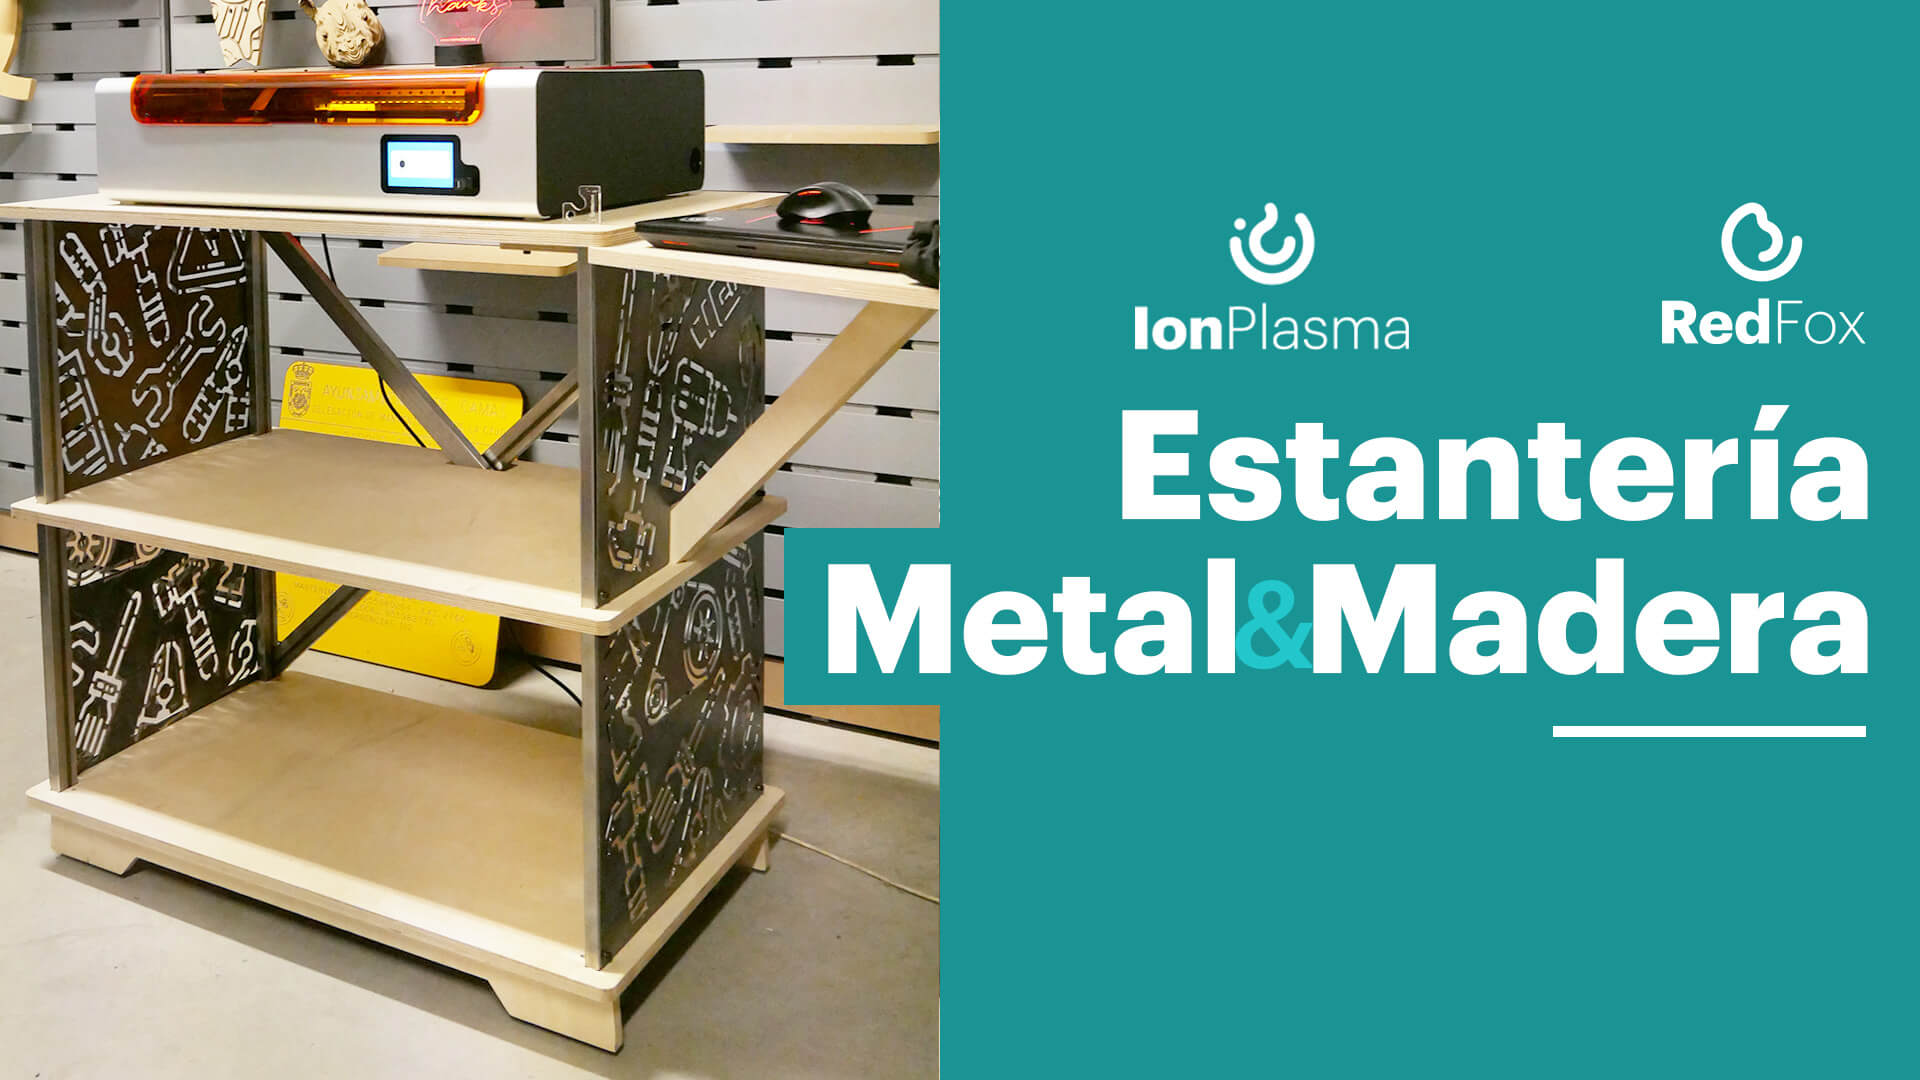 Vídeo de YouTube: estantería de metal y madera con Ion Plasma